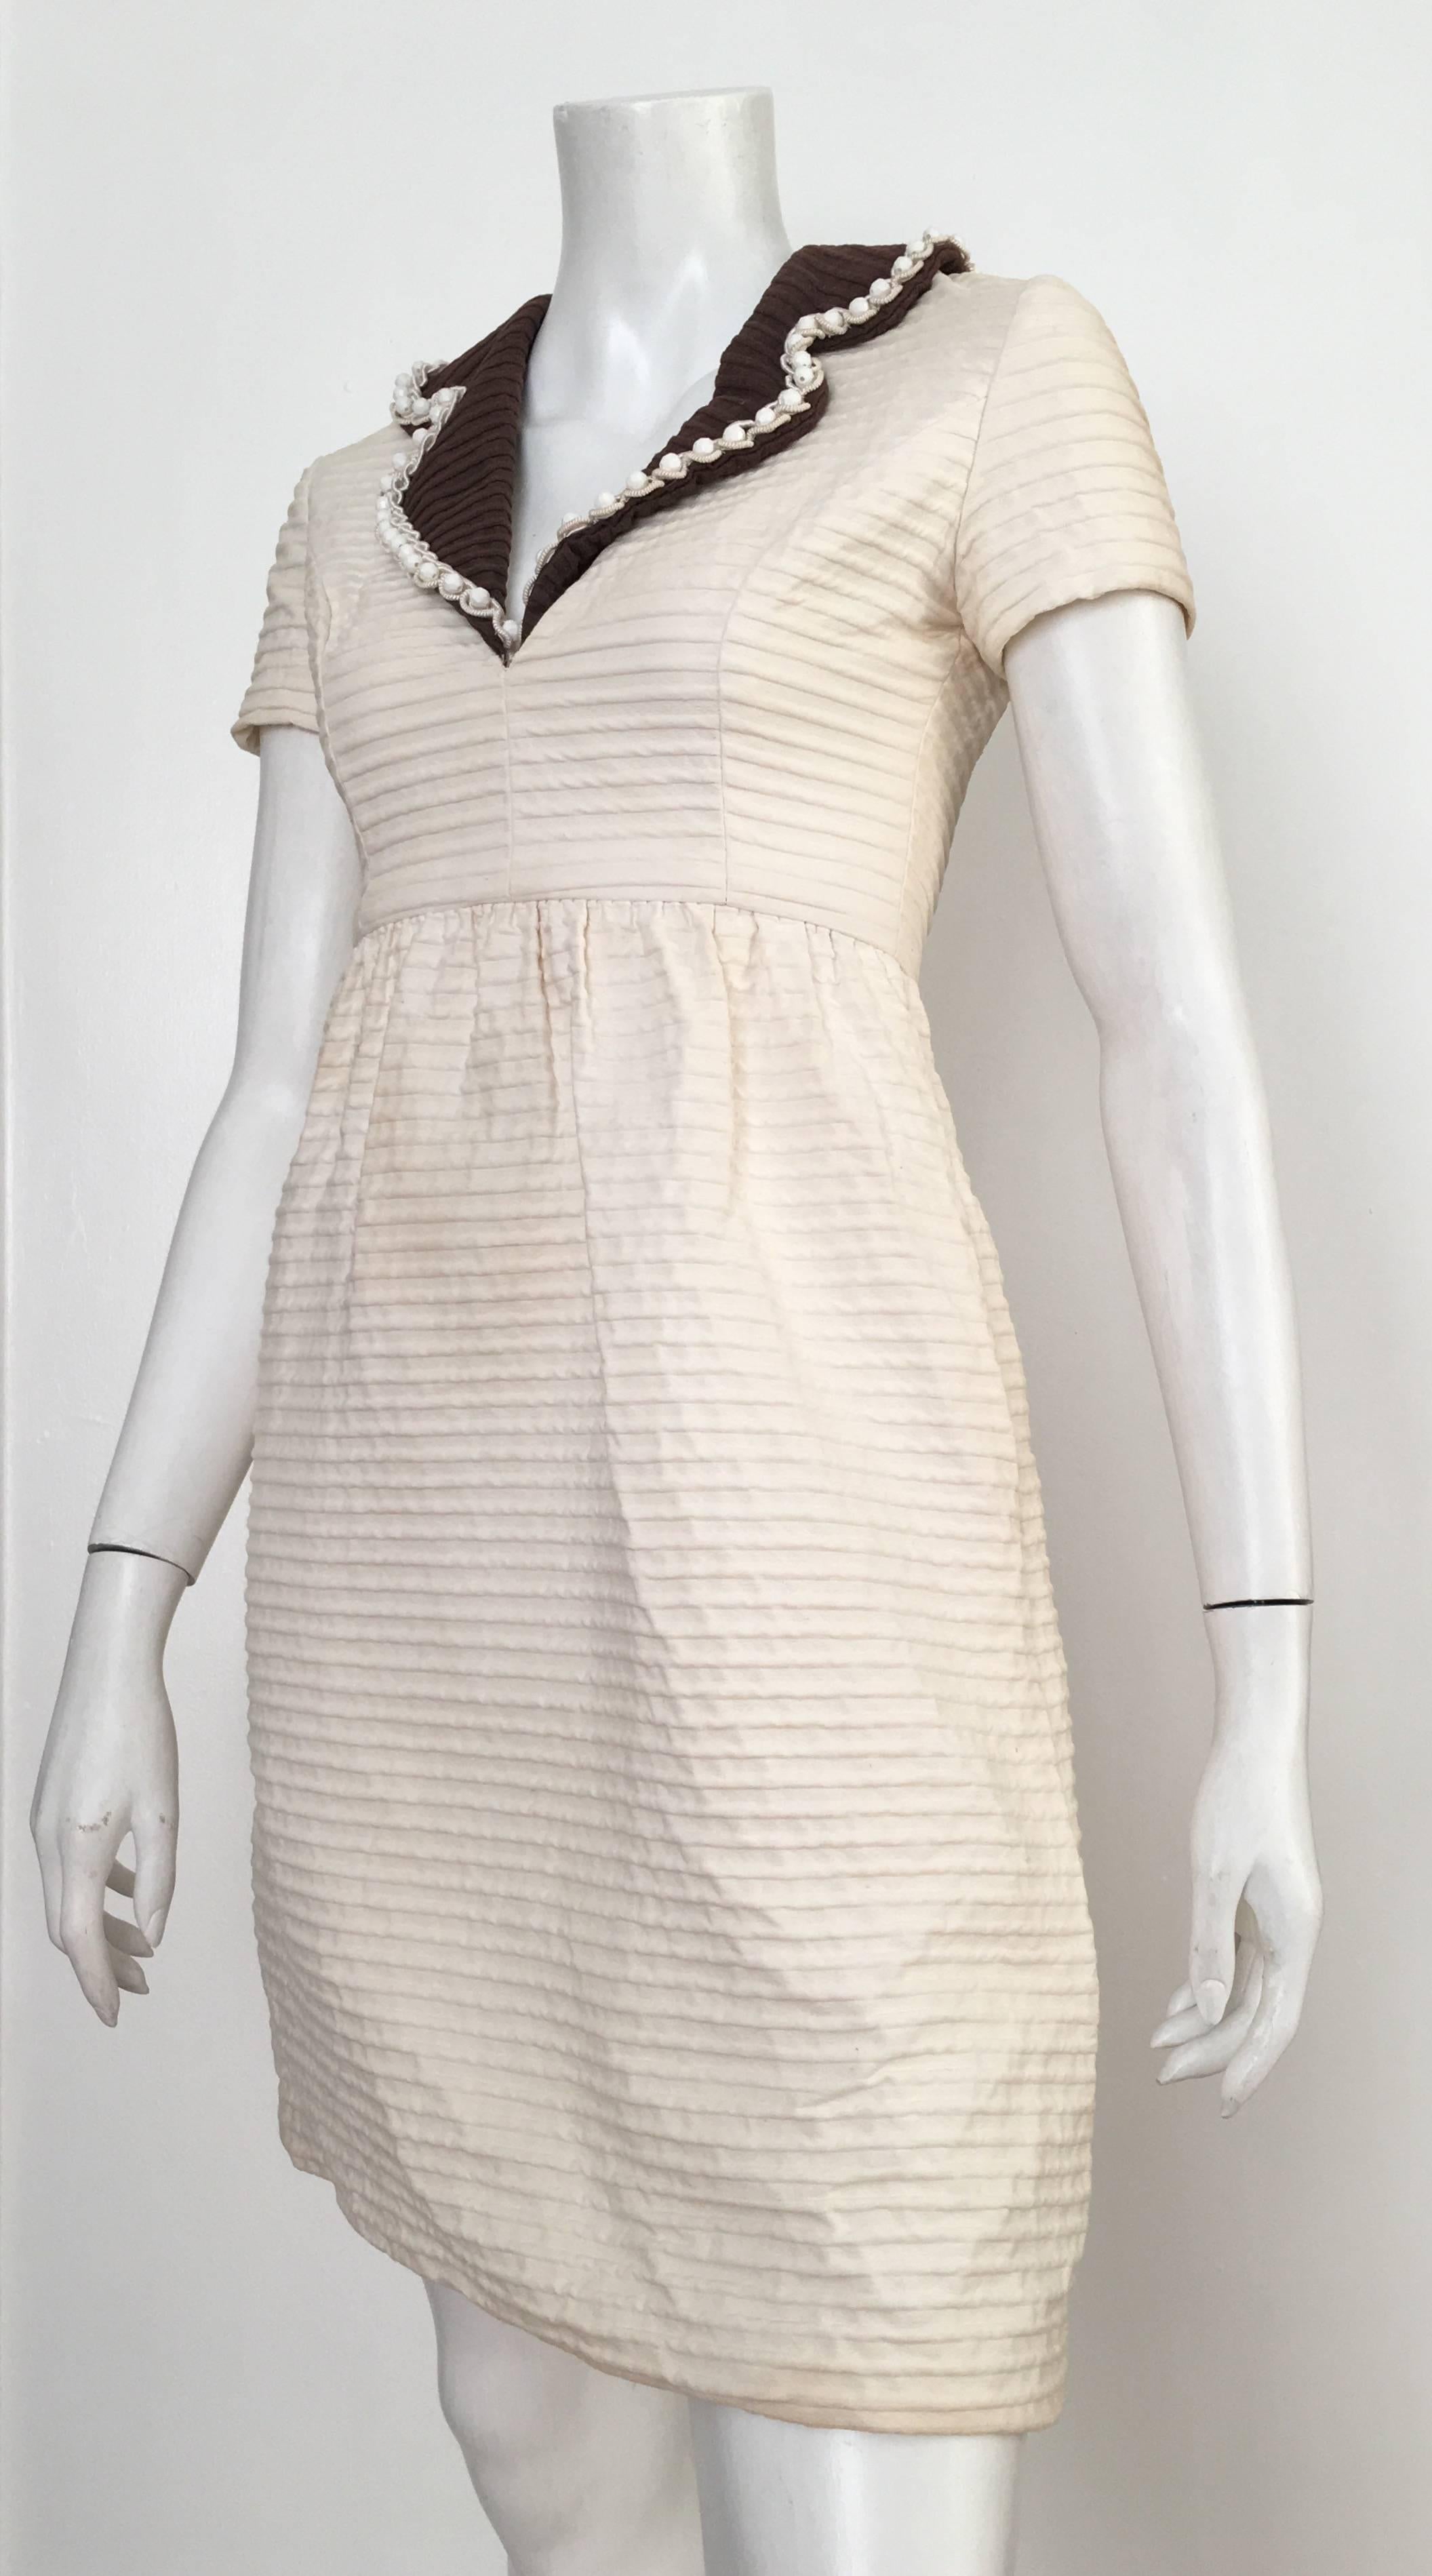 Oscar de la Renta Cotton Dress with Pockets Size 2. For Sale 3